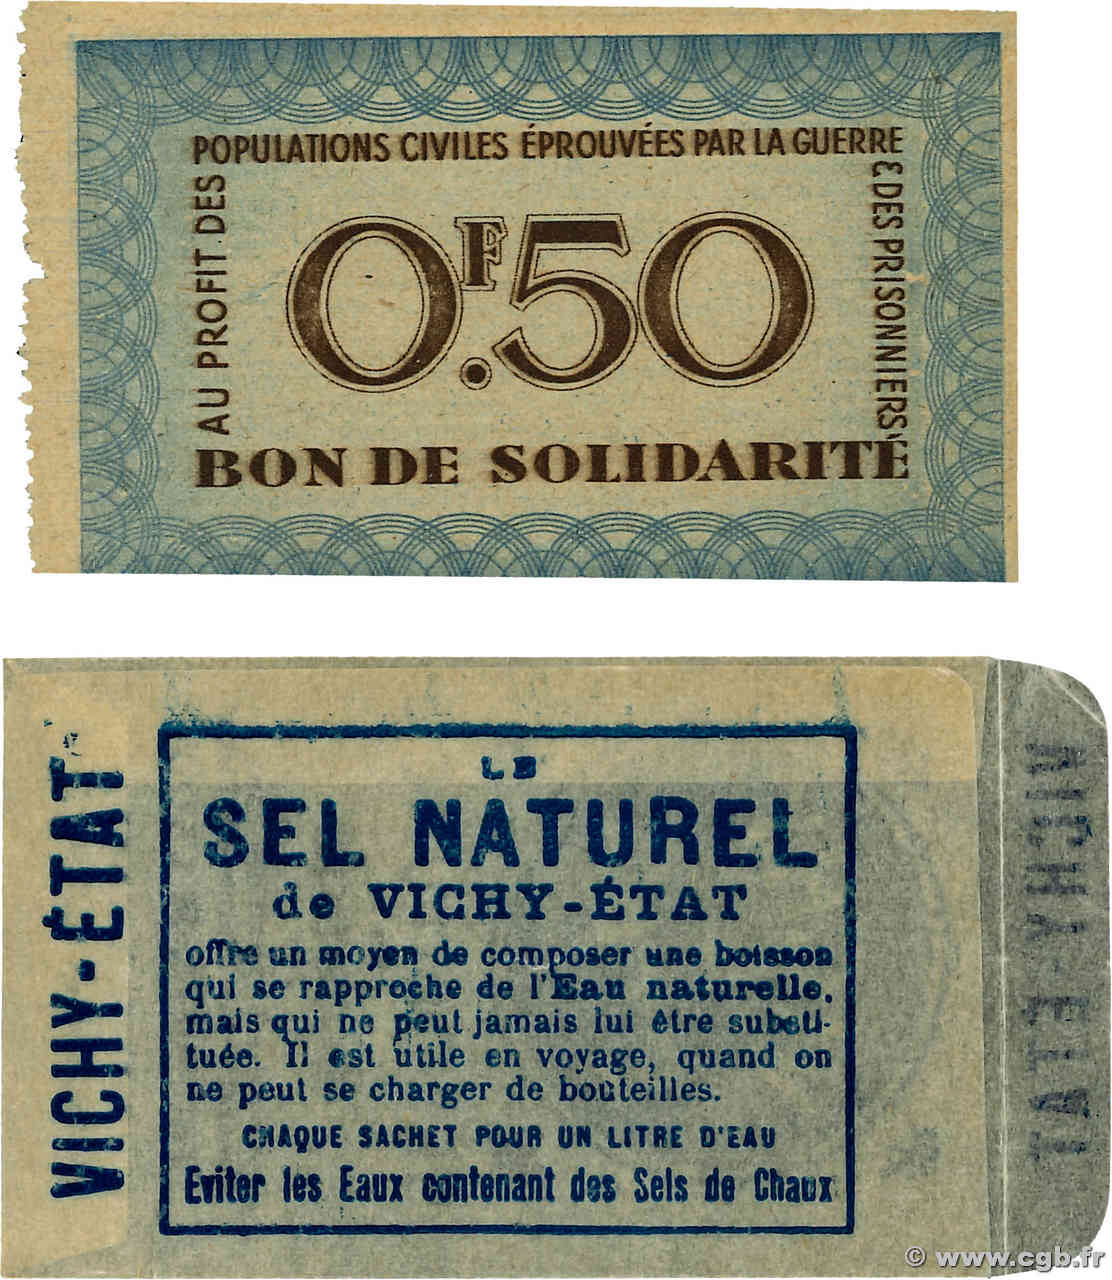 50 Centimes BON DE SOLIDARITÉ Publicitaire FRANCE regionalism and miscellaneous  1941 KL.01A UNC